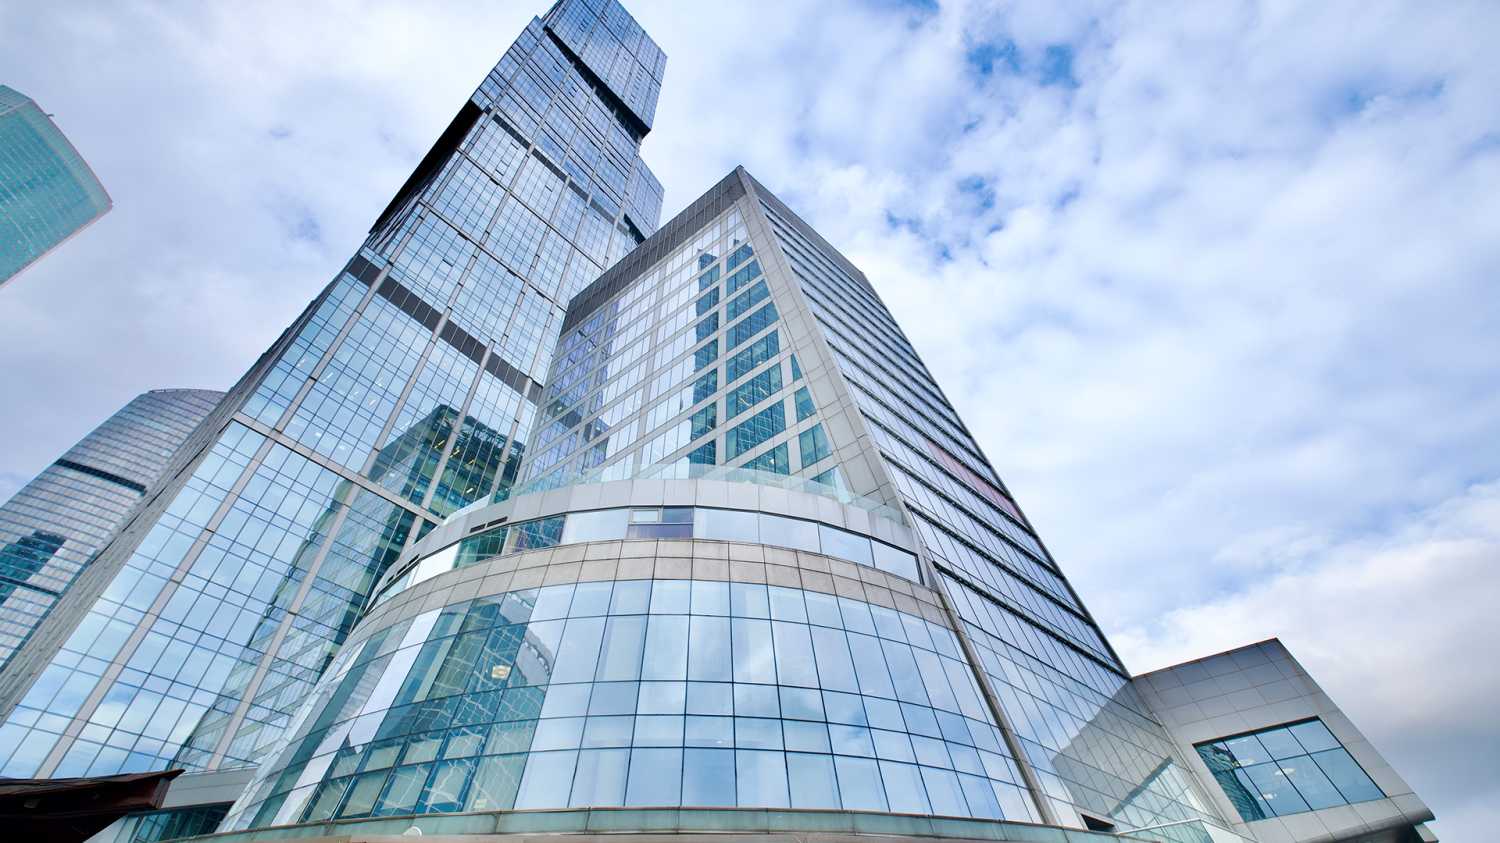 Башни соединяет 18-этажная секция с офисами, магазинами и торговым атриумом, где есть все необходимое для жизни